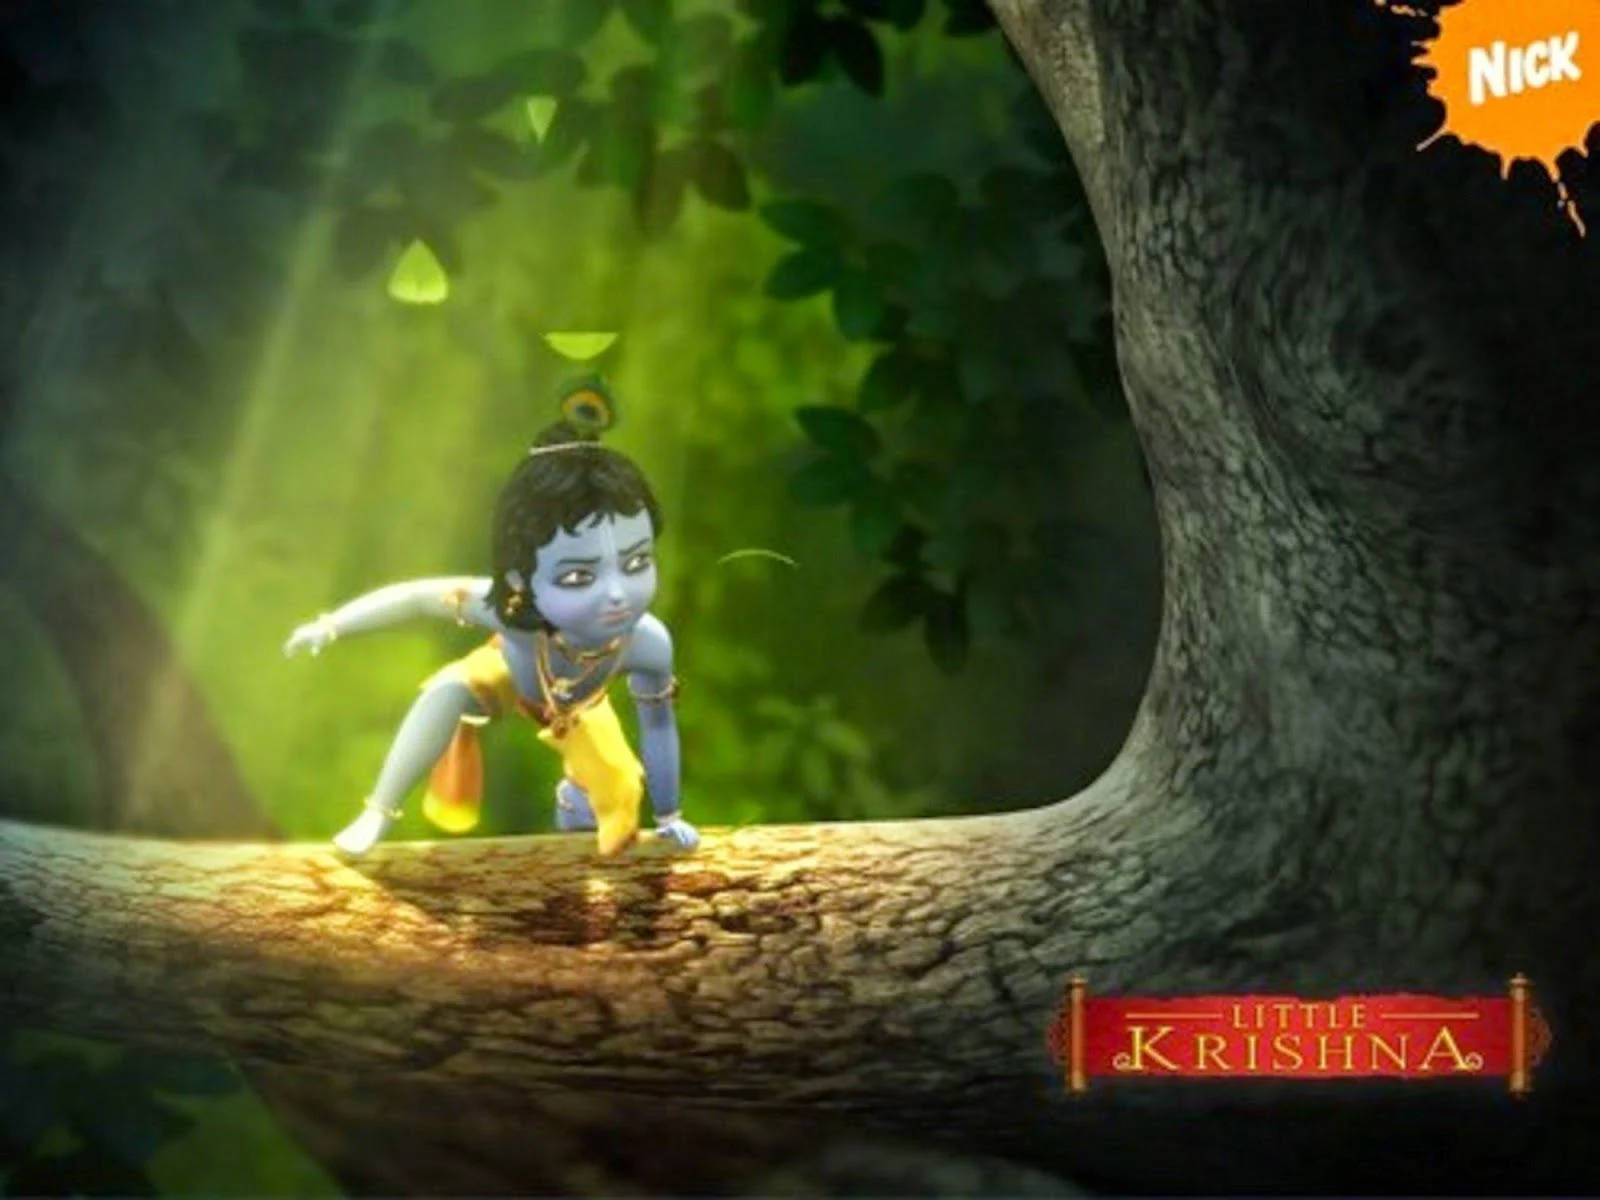 Little Krishna - Embodiment Of Innocence And Divinity